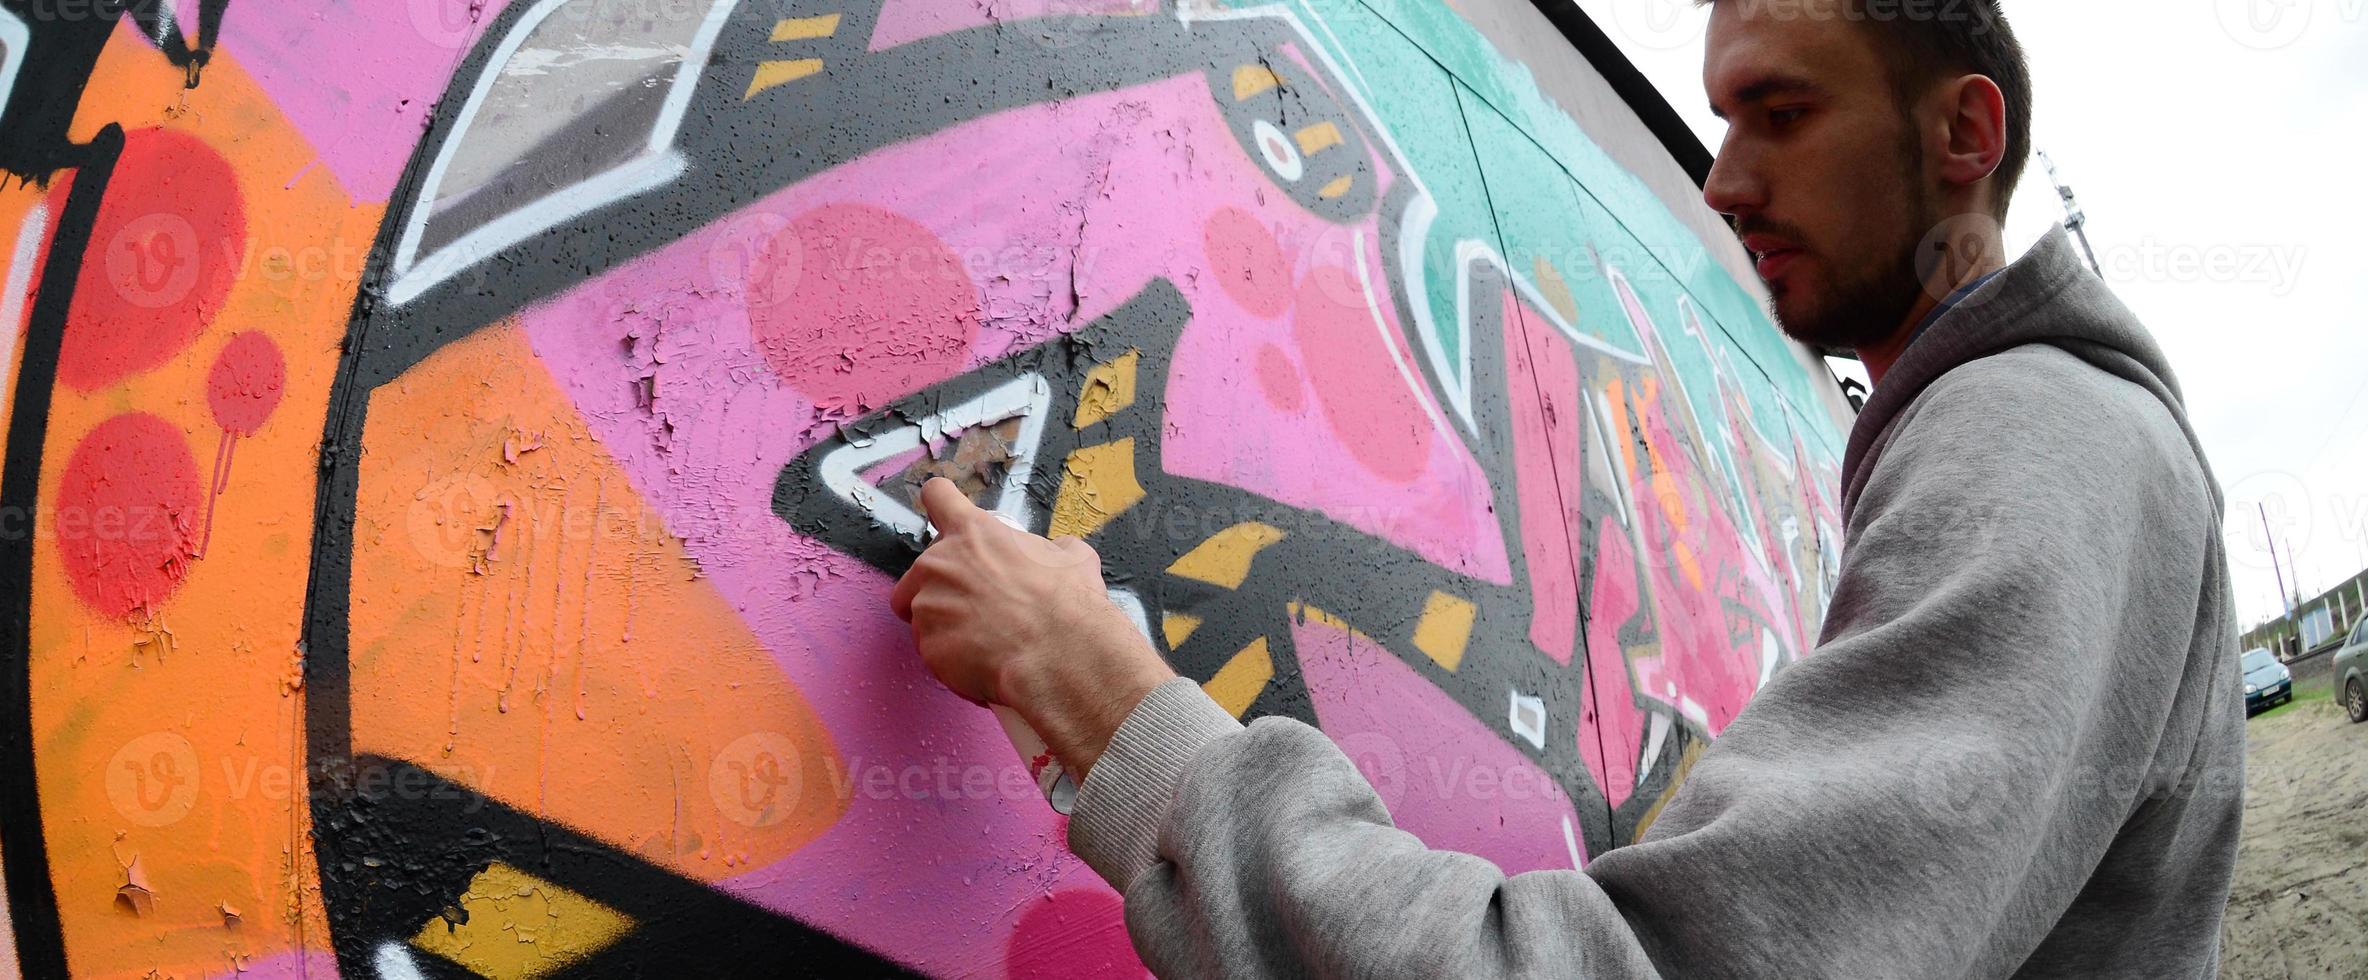 un jeune homme dans un sweat à capuche gris peint des graffitis en rose et vert c photo